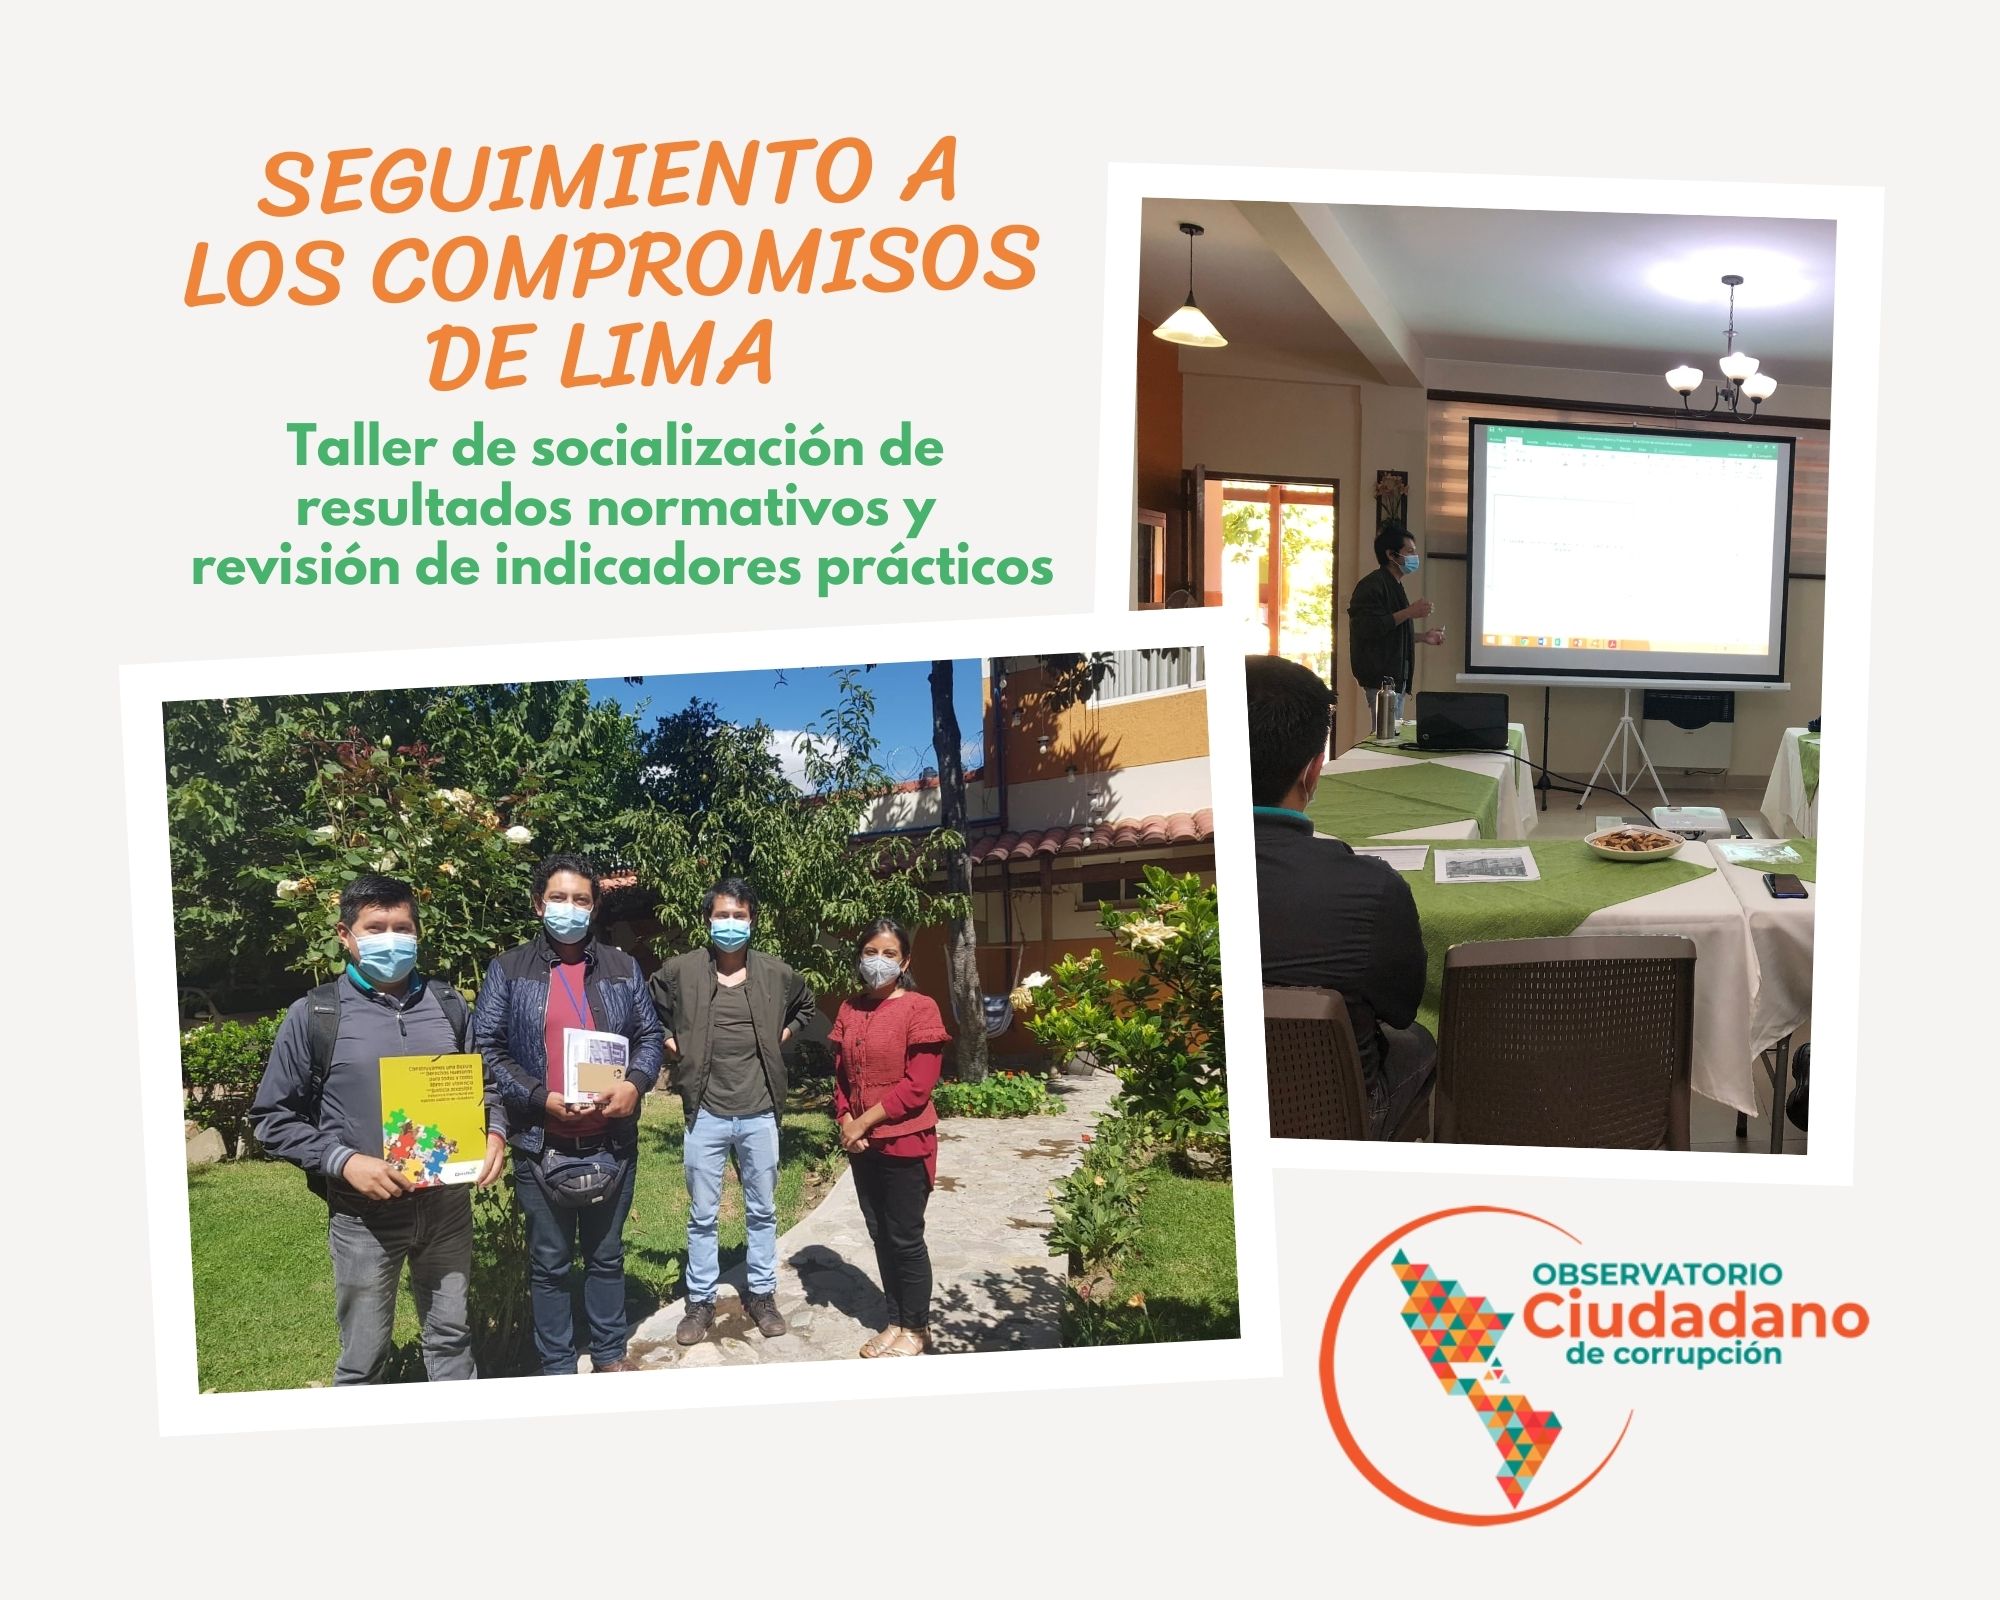 Organizaciones de Sociedad Civil de Tarija se suma a la investigación al Seguimiento de los Compromisos de Lima iniciativa impulsada por el Observatorio Ciudadano de Corrupción